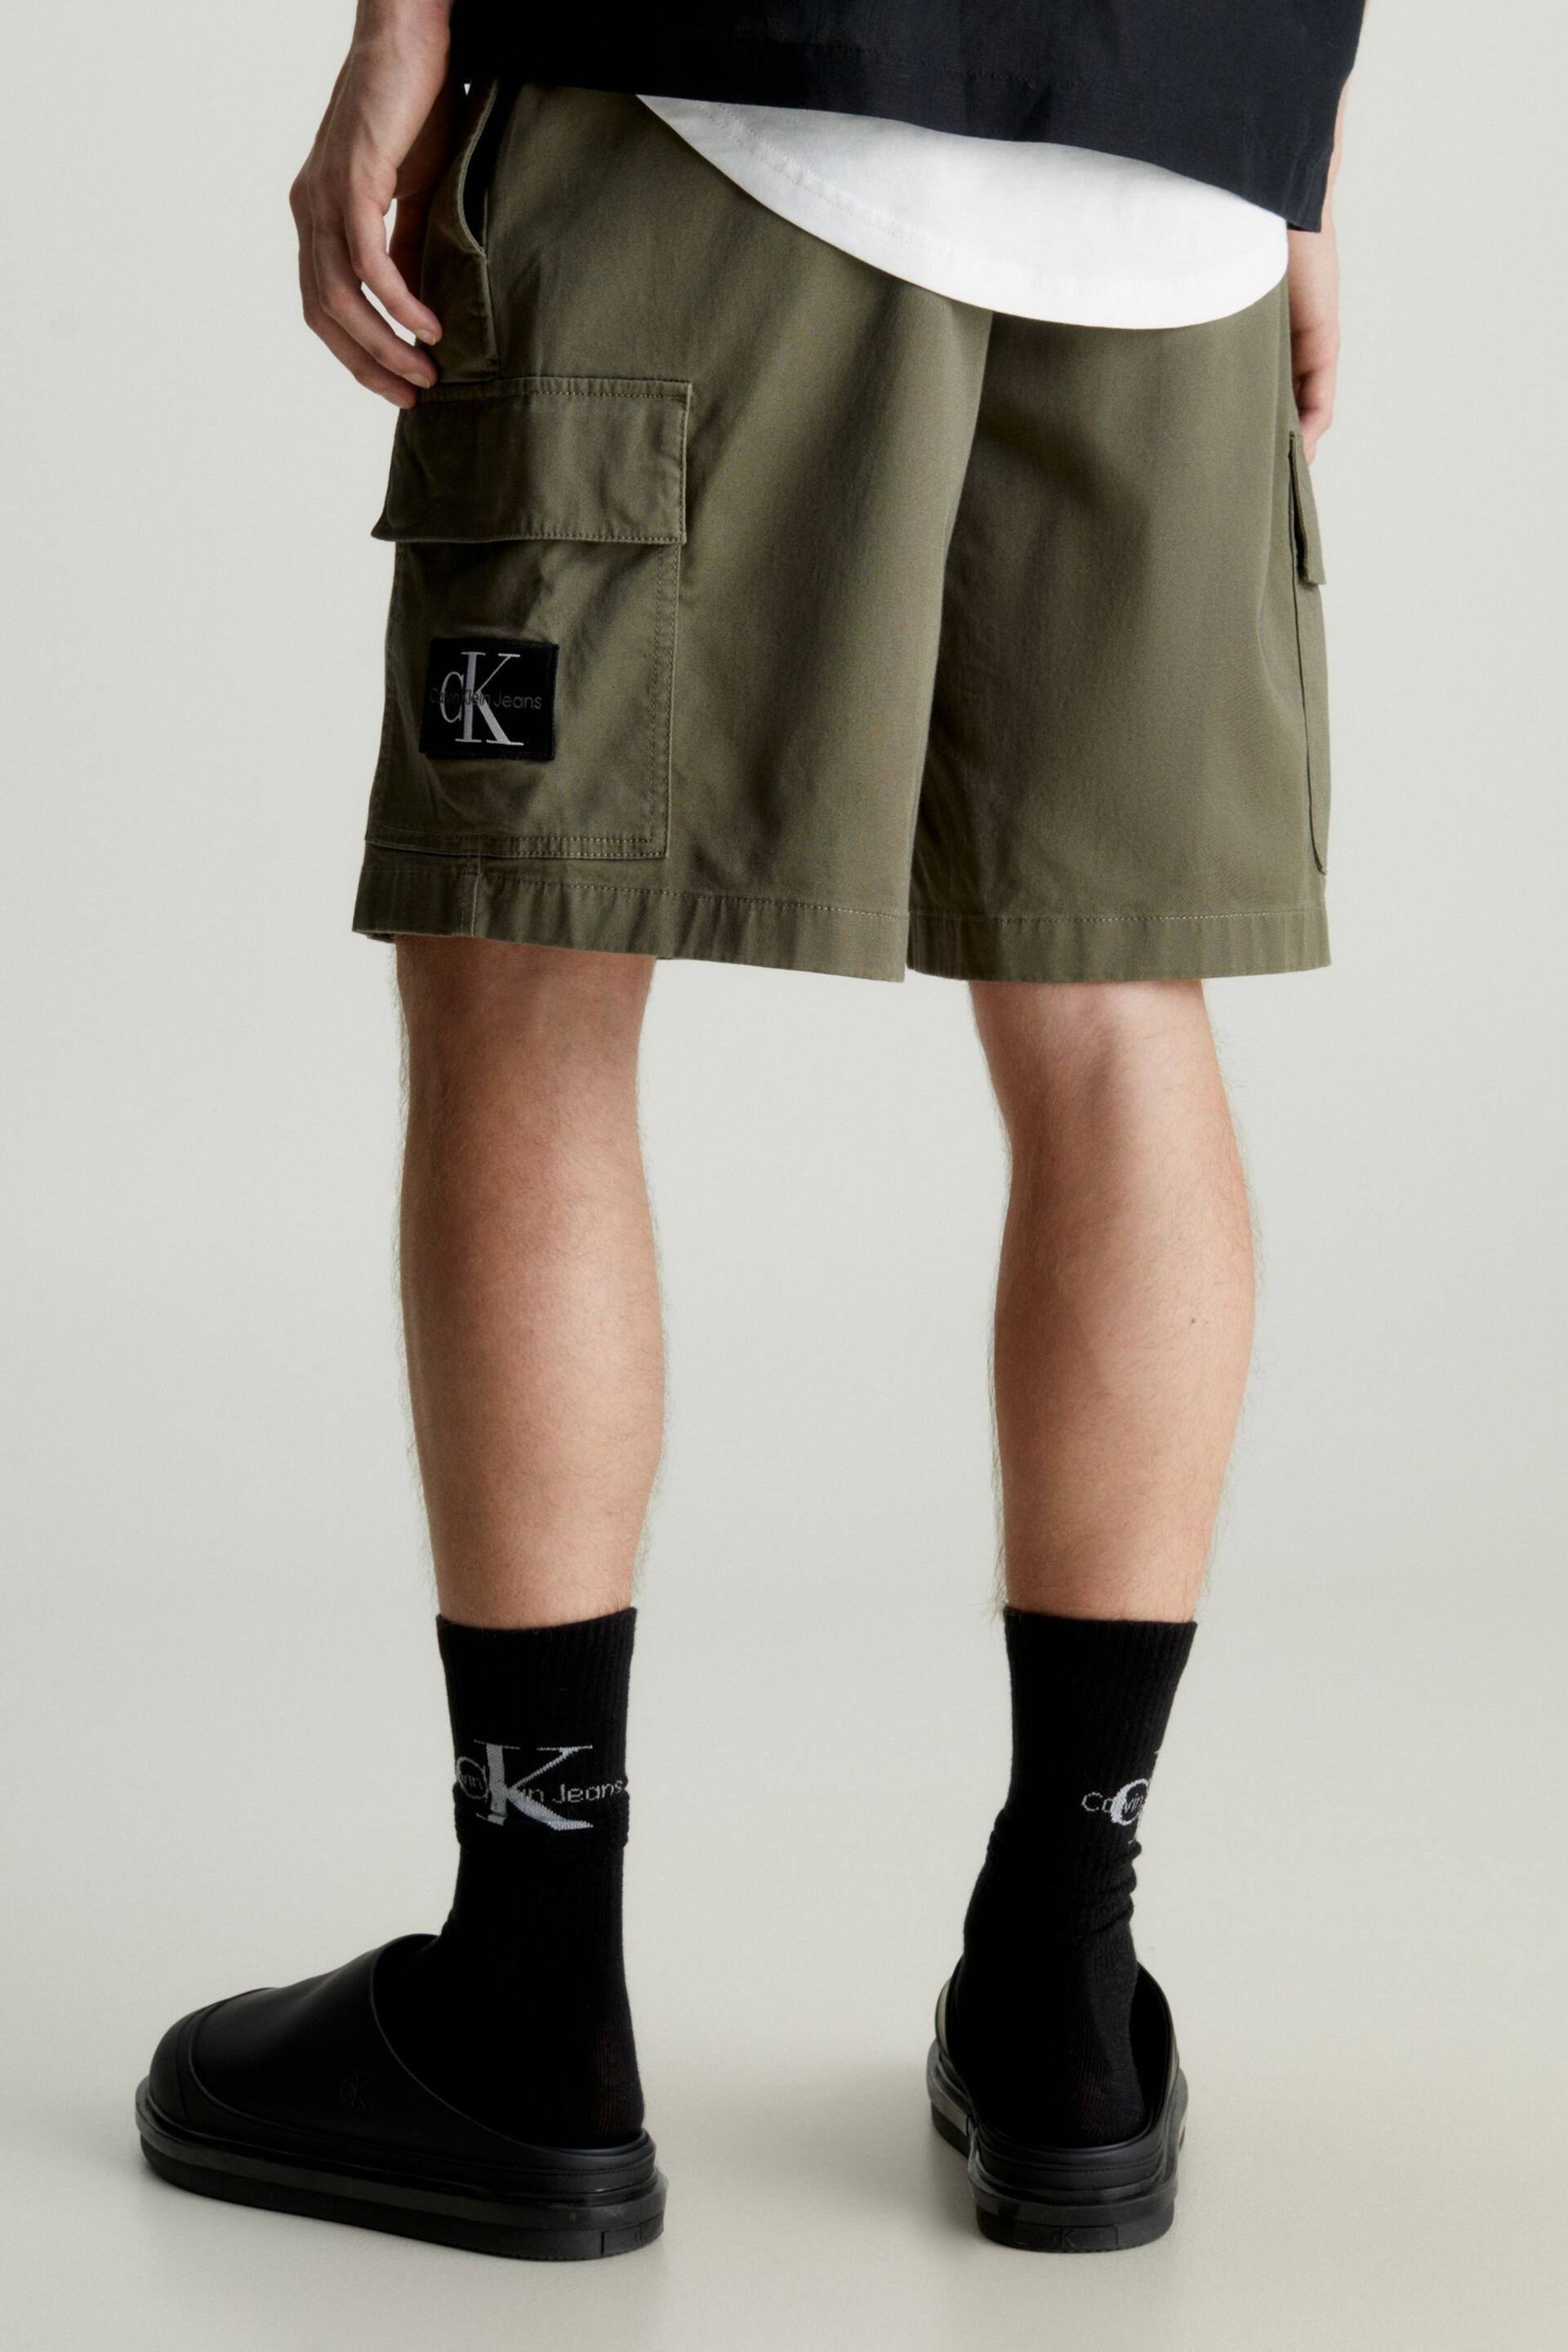 Calvin Klein Green Cargo Woven Shorts - Image 2 of 3